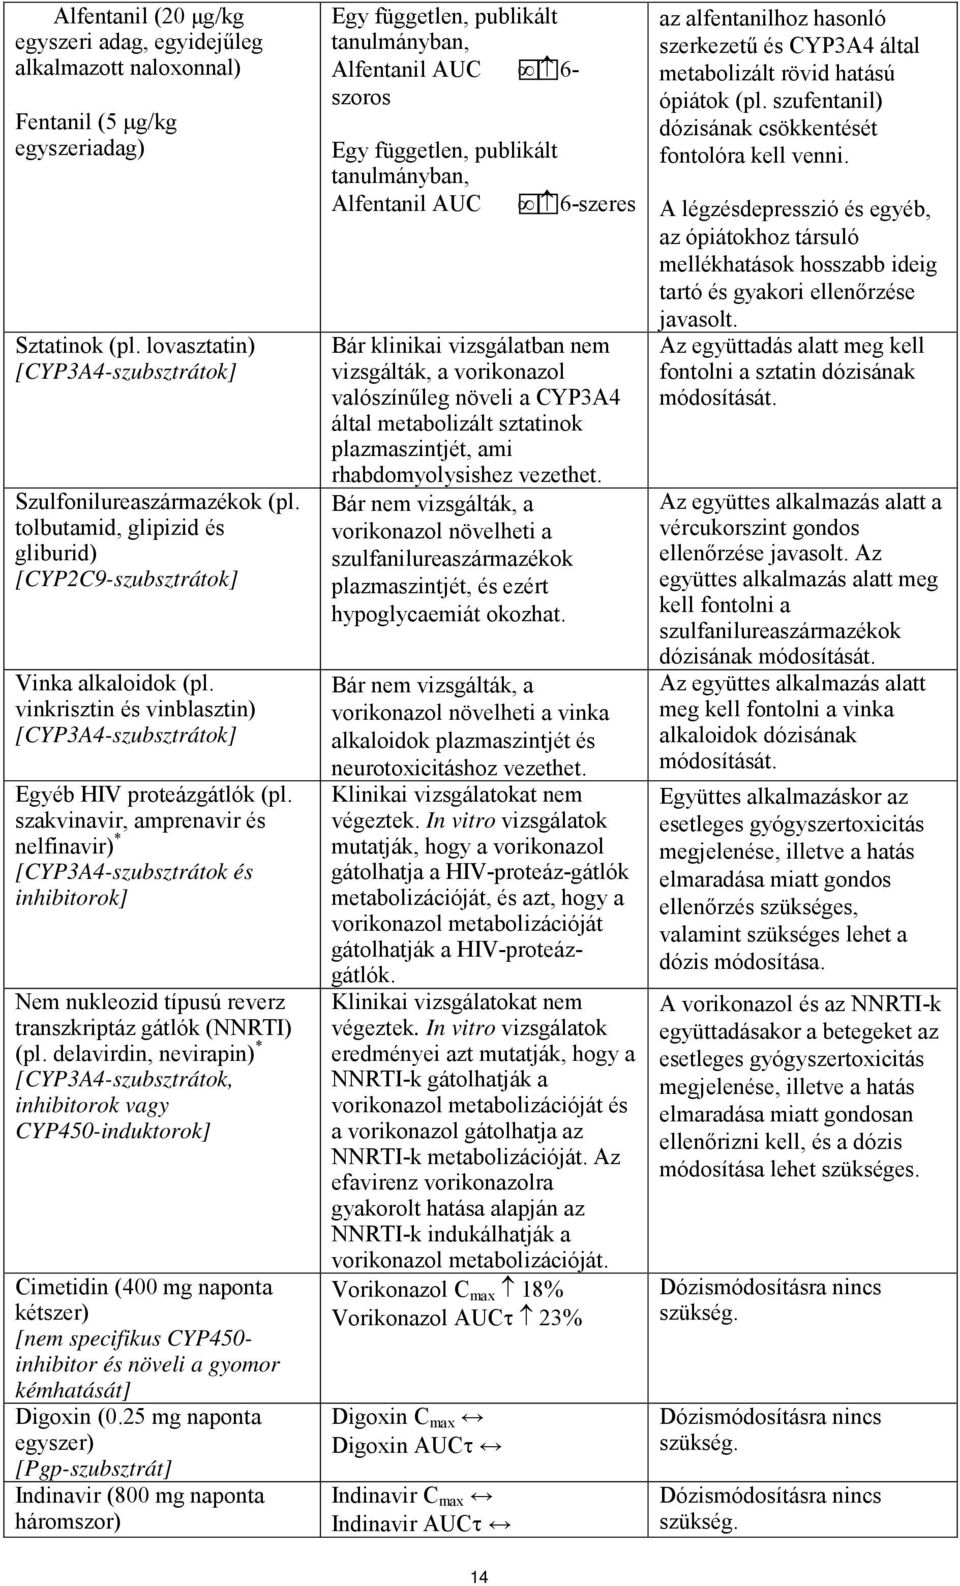 szakvinavir, amprenavir és nelfinavir) * [CYP3A4-szubsztrátok és inhibitorok] Nem nukleozid típusú reverz transzkriptáz gátlók (NNRTI) (pl.